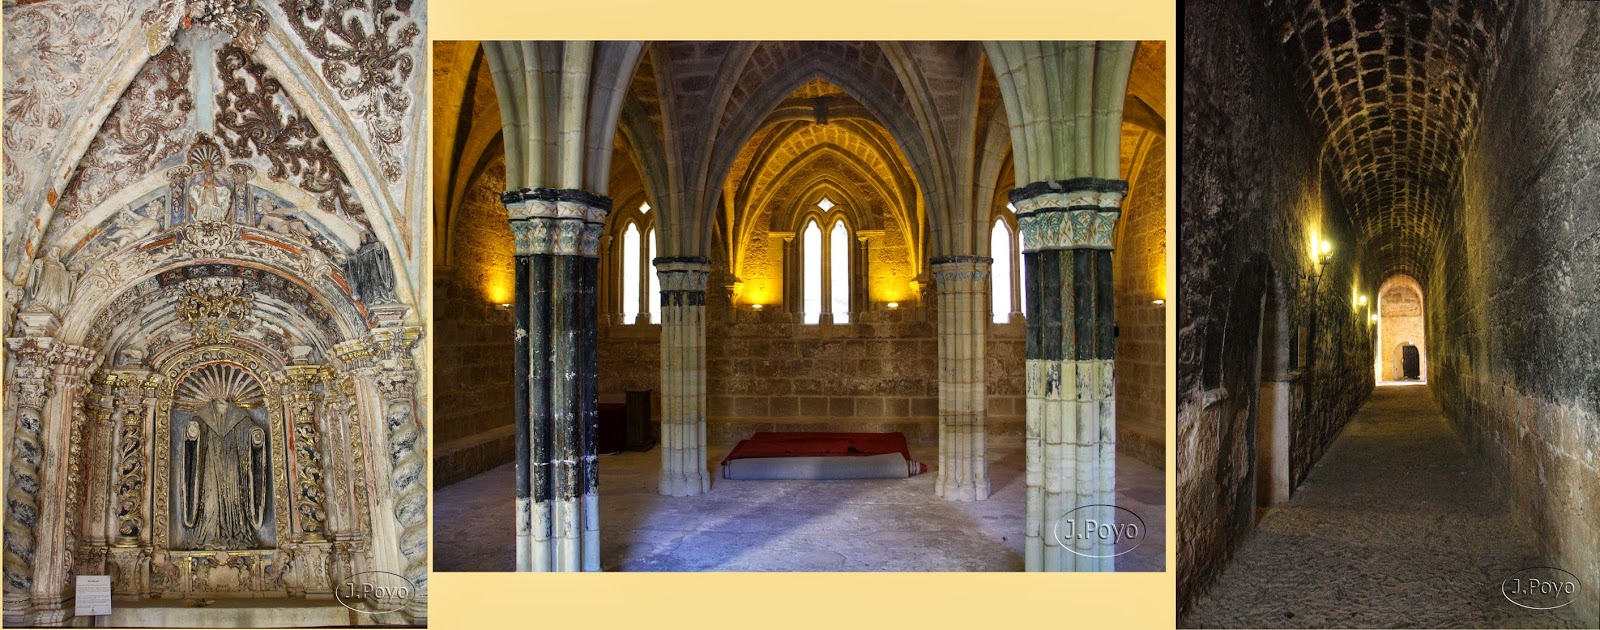 El monasterio de Piedra, Zaragoza